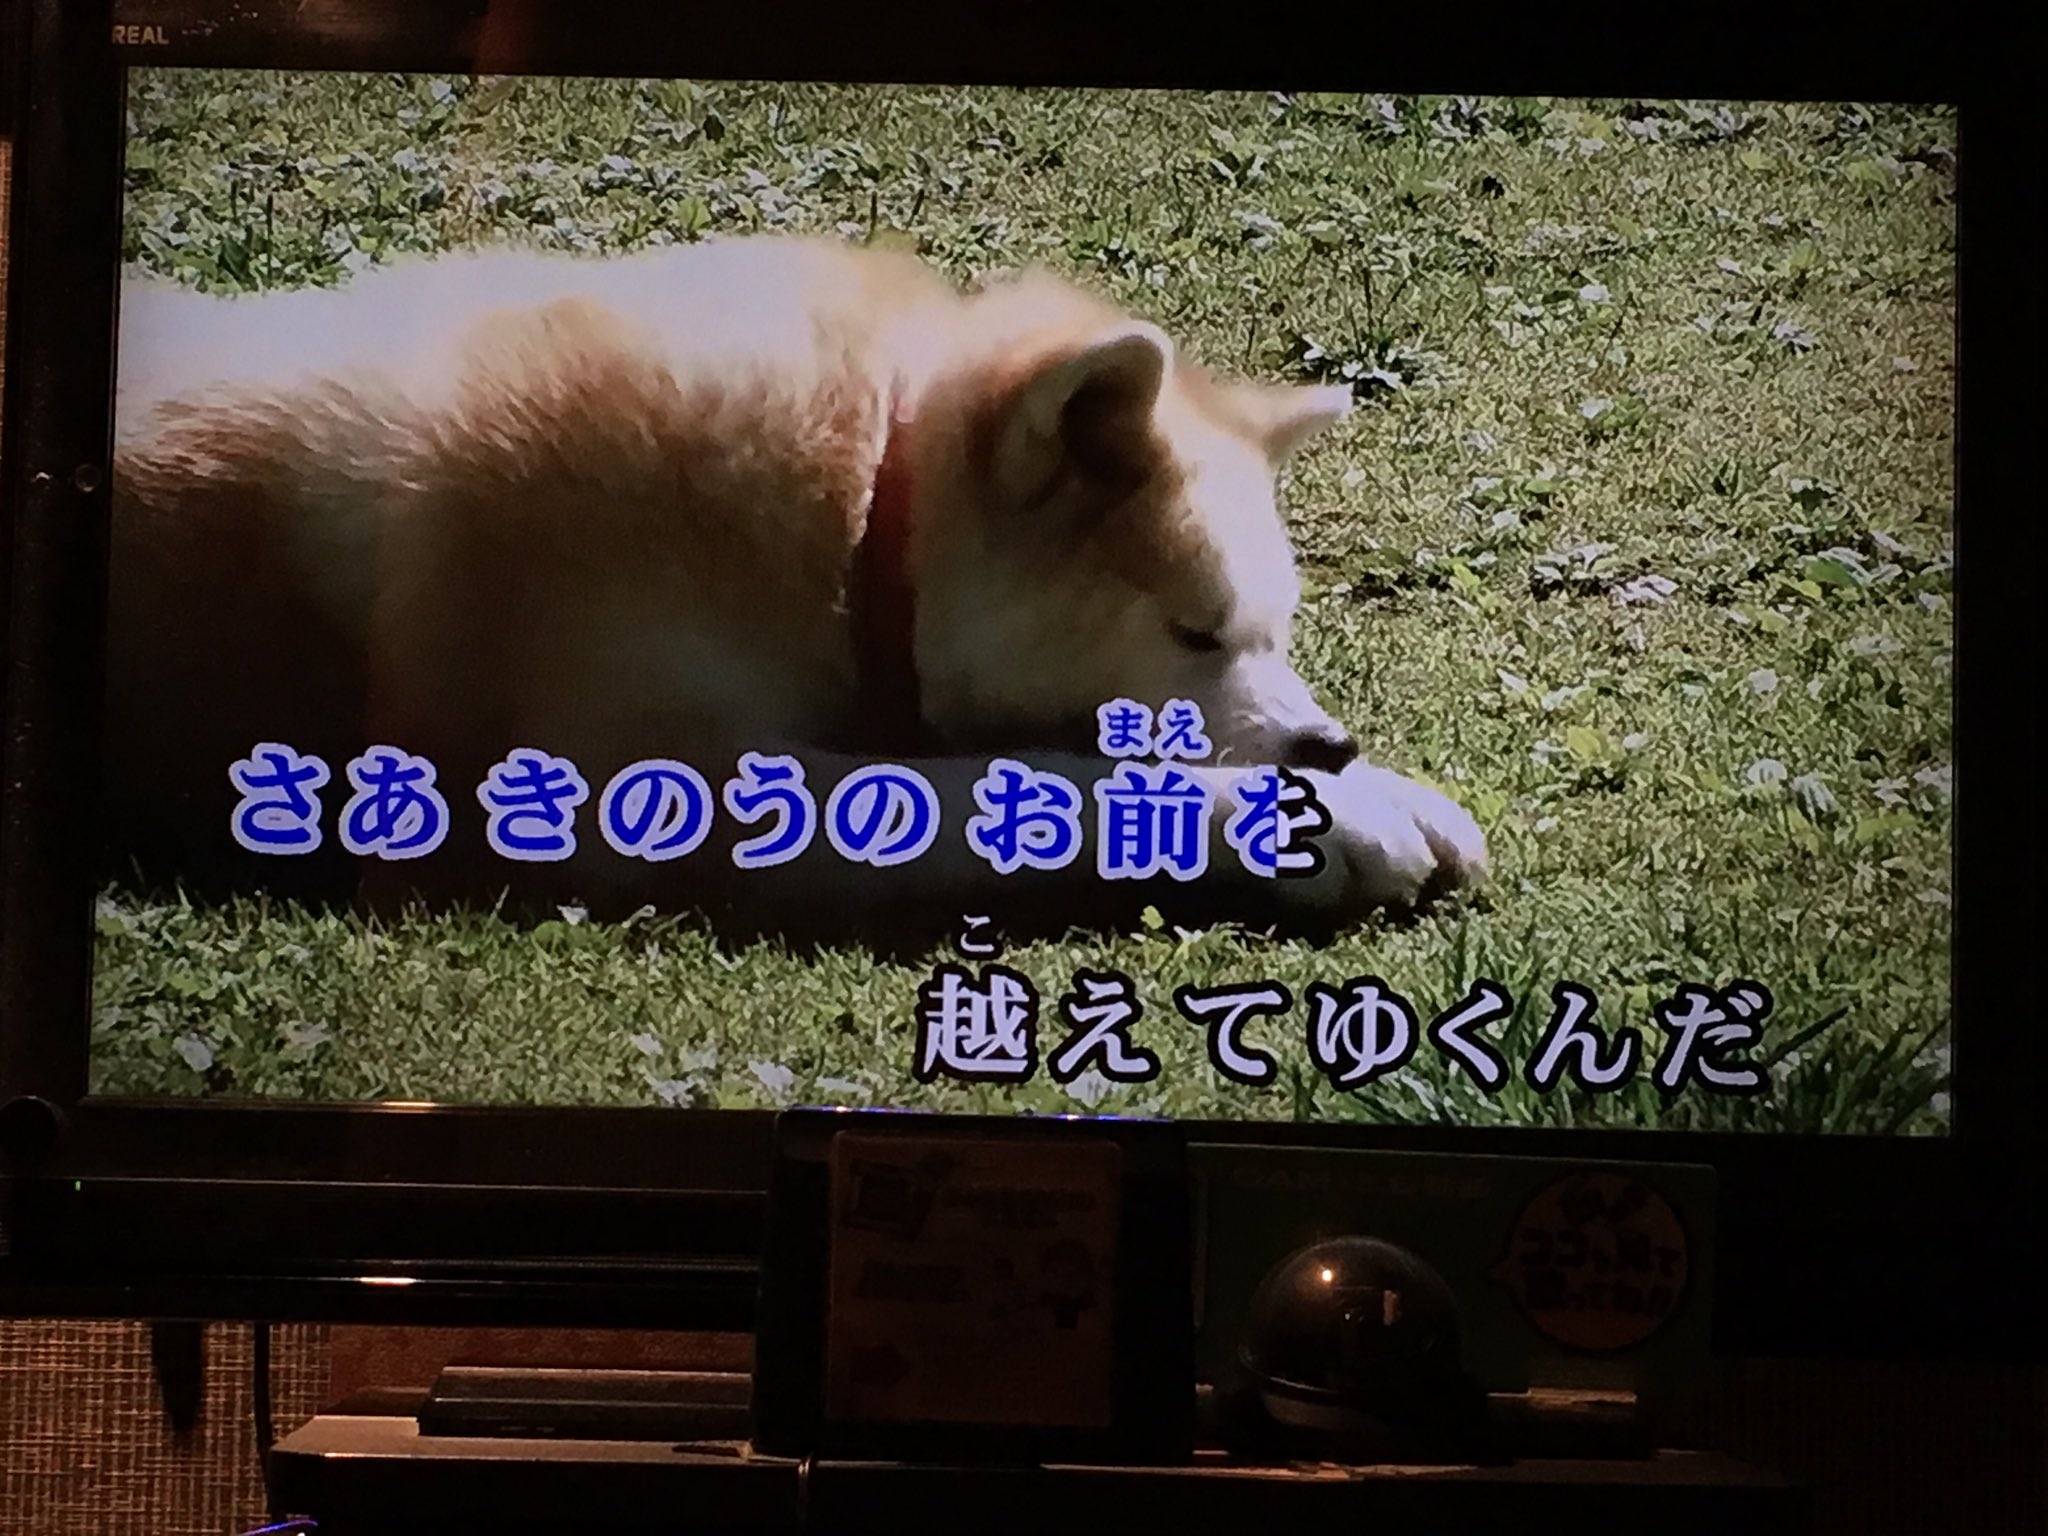 アニメ 銀牙 流れ星 銀 のカラオケ映像の犬がおもしろい 笑